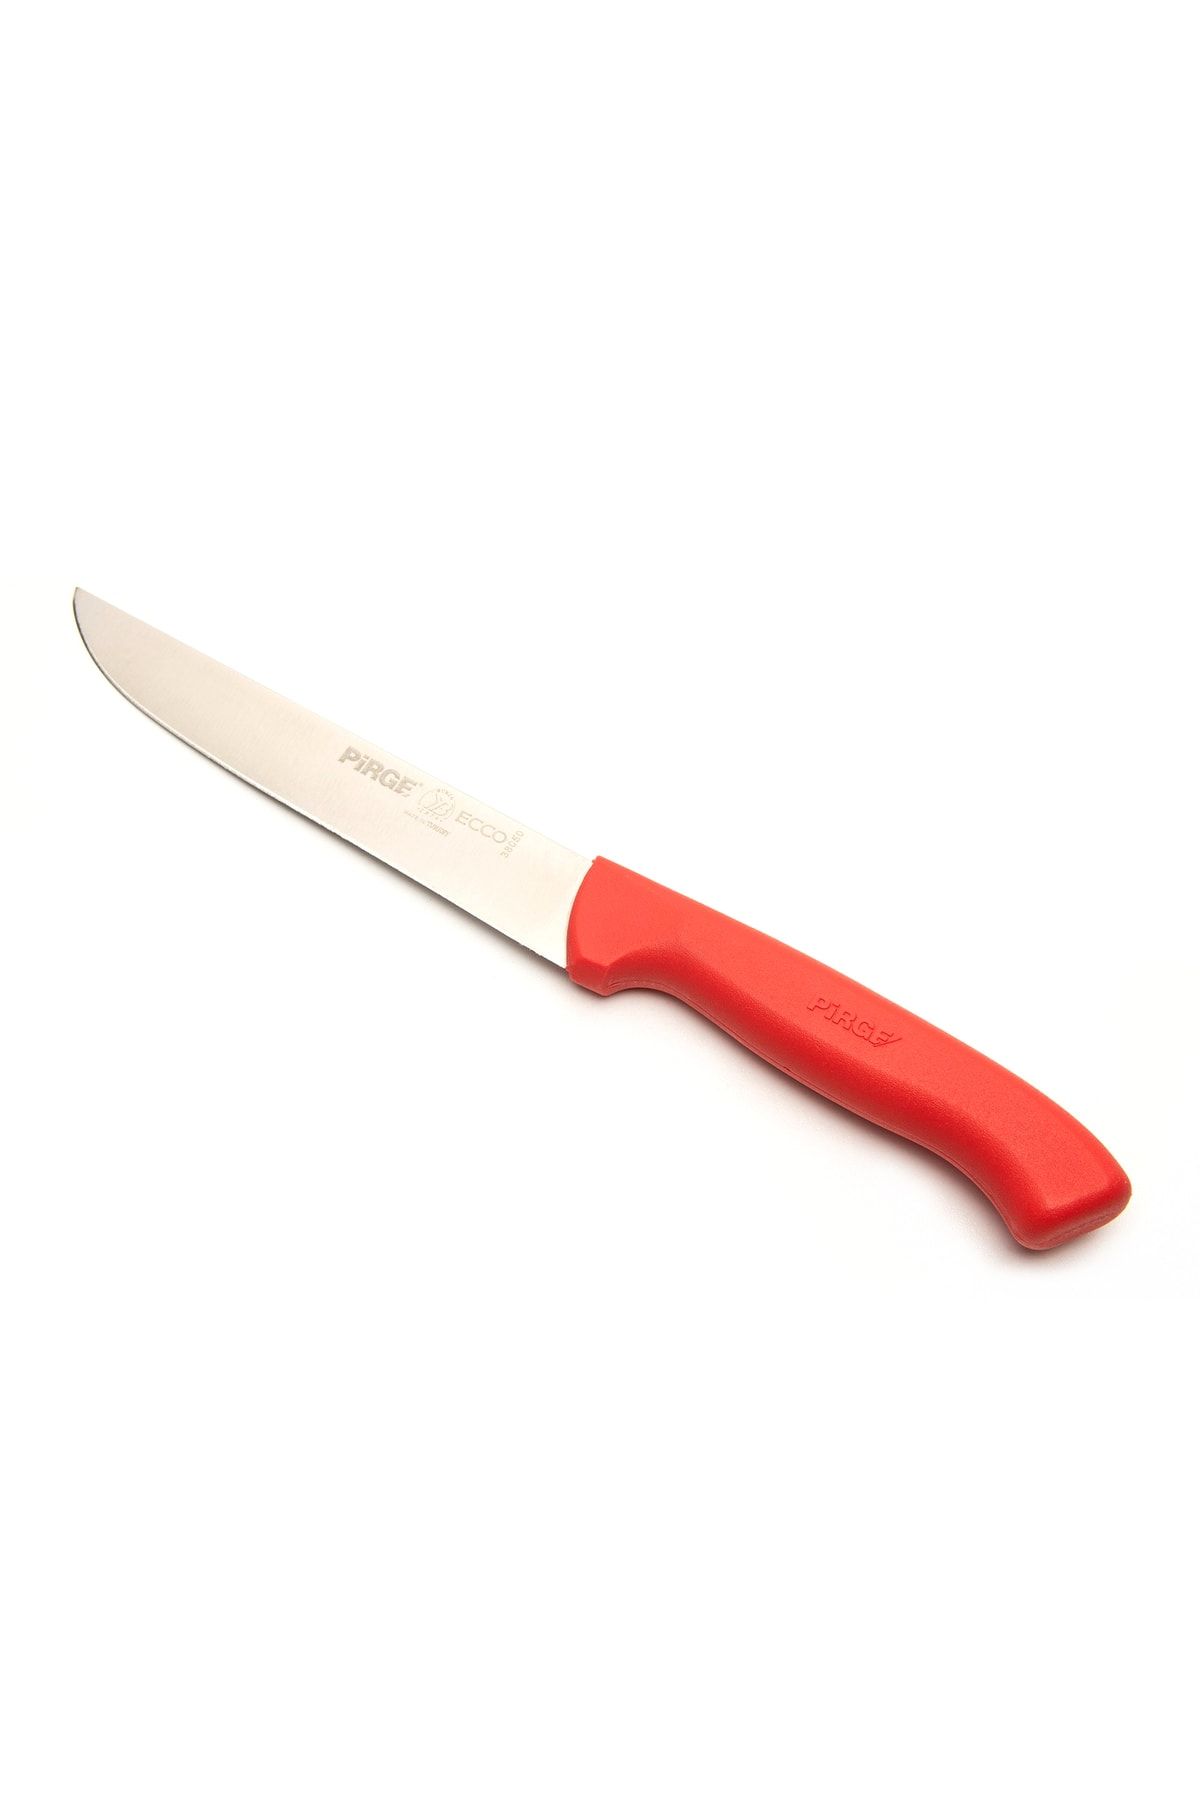 Pirge Ecco Mutfak Bıçağı - Kırmızı/15,5 Cm